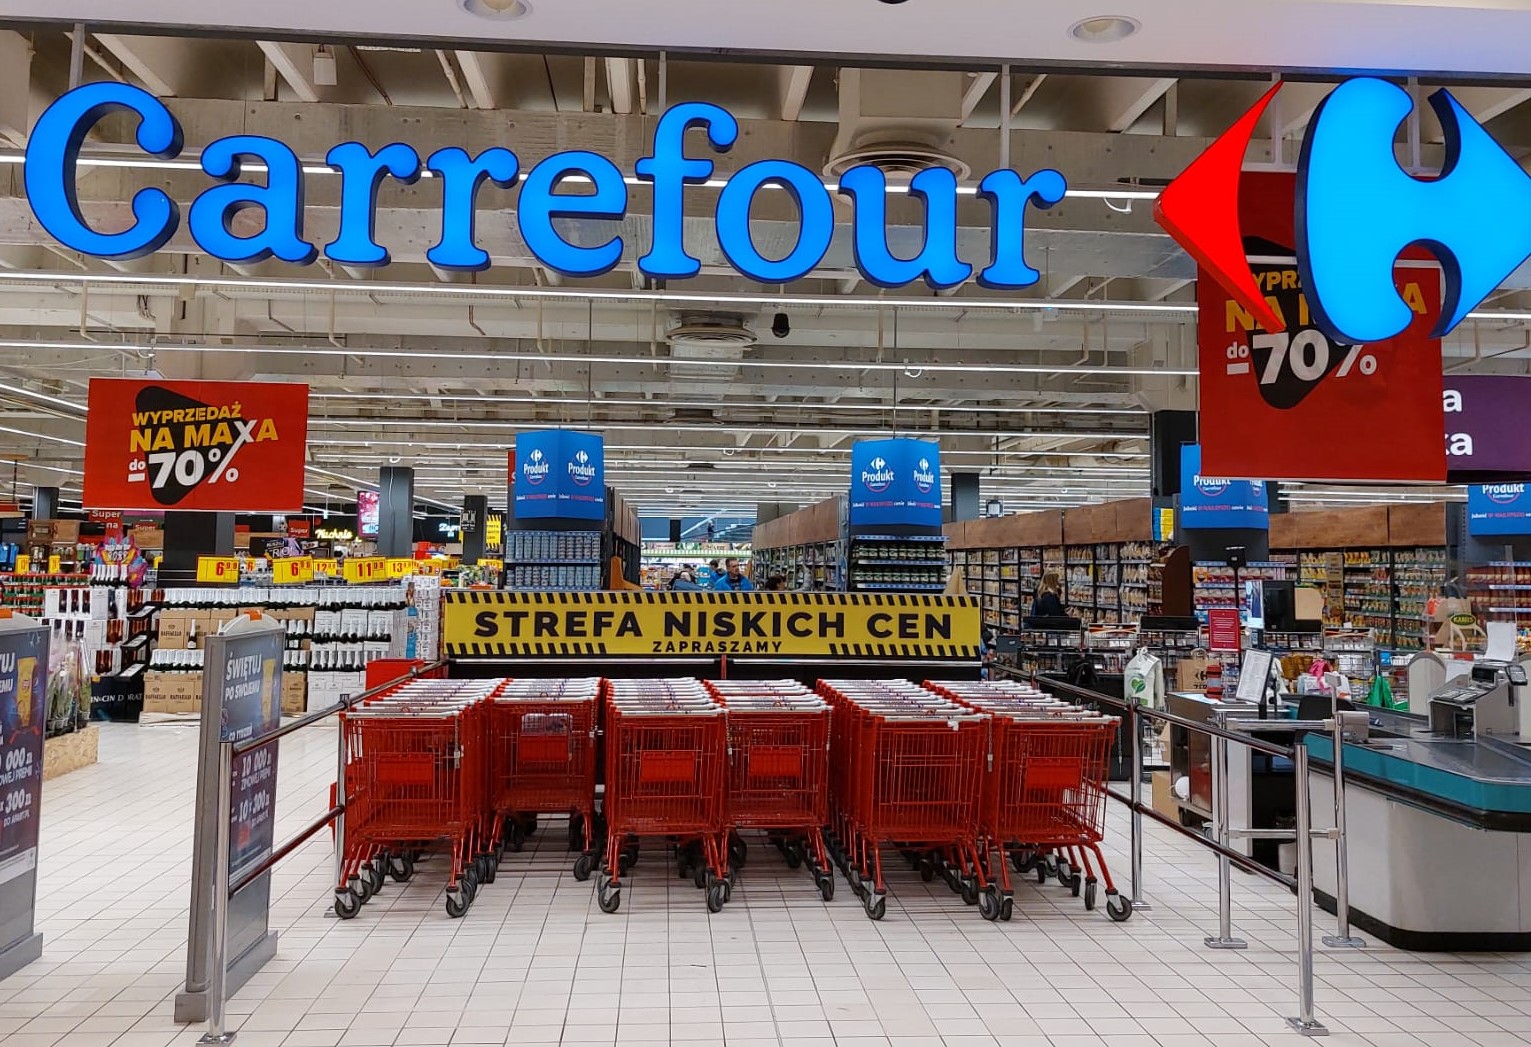 Carrefour tworzy w swoich sklepach Strefy Niskich Cen z najtańszymi produktami w każdej kategorii